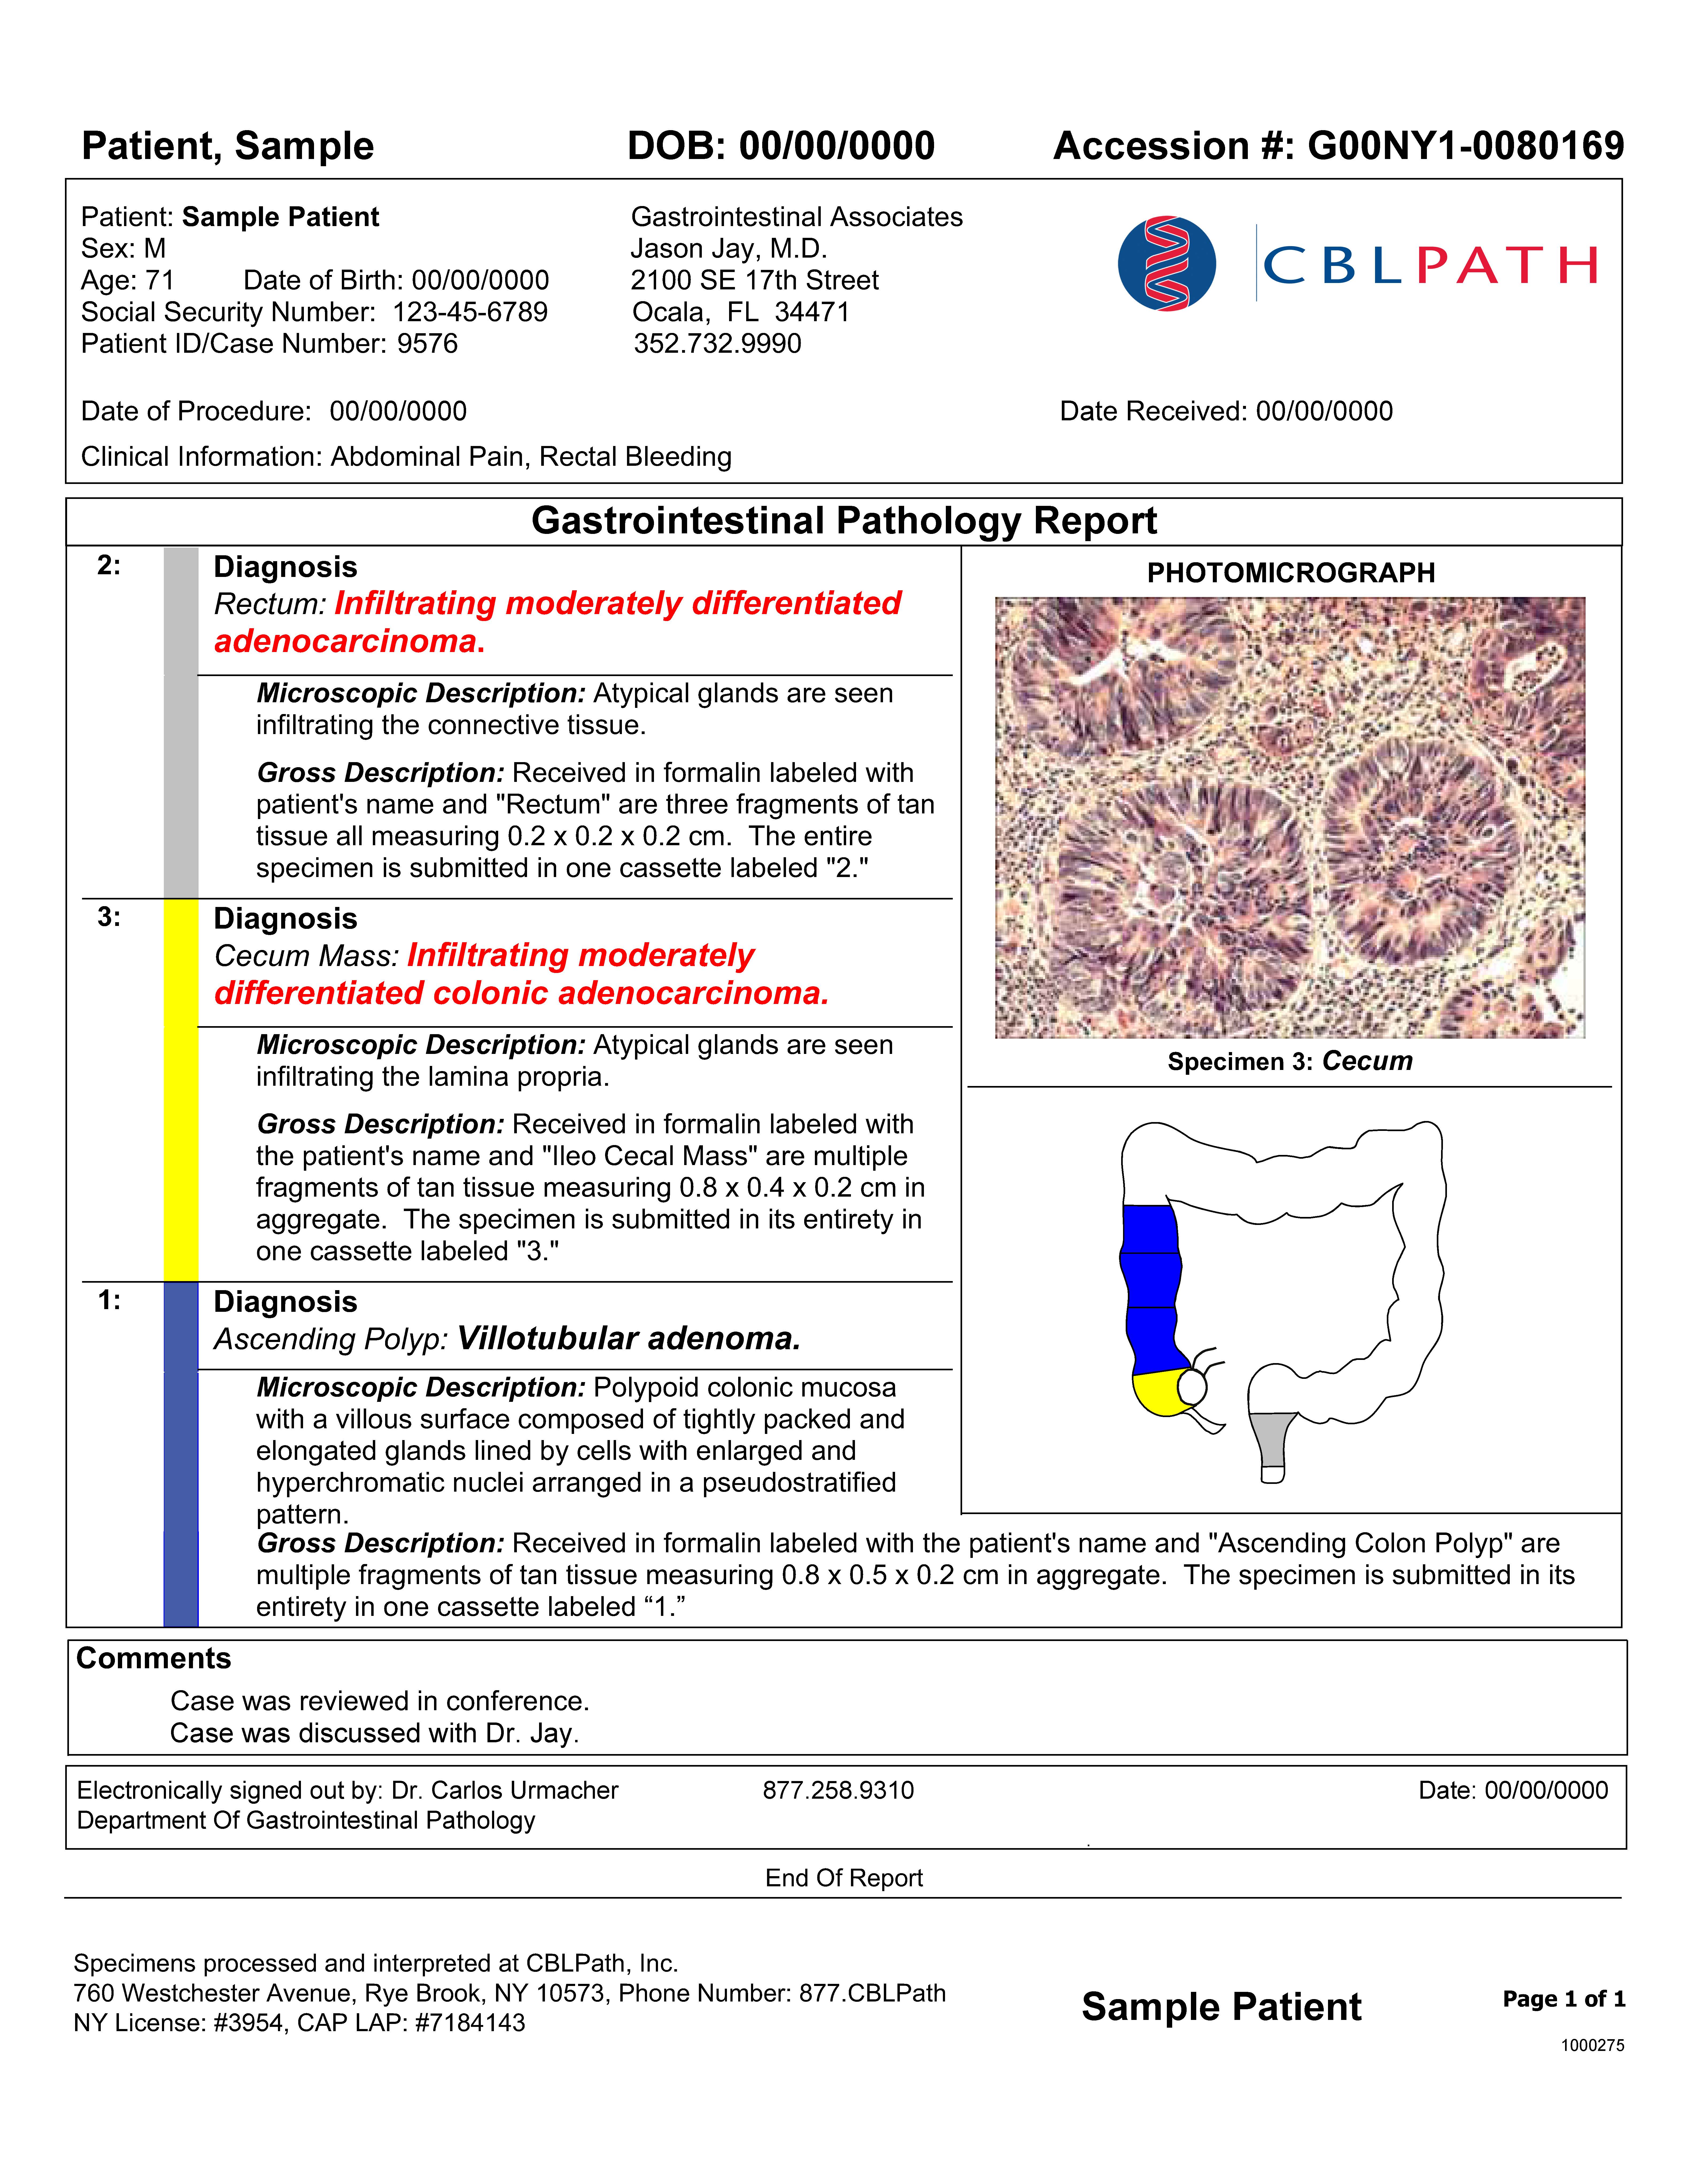 GI Pathology Report